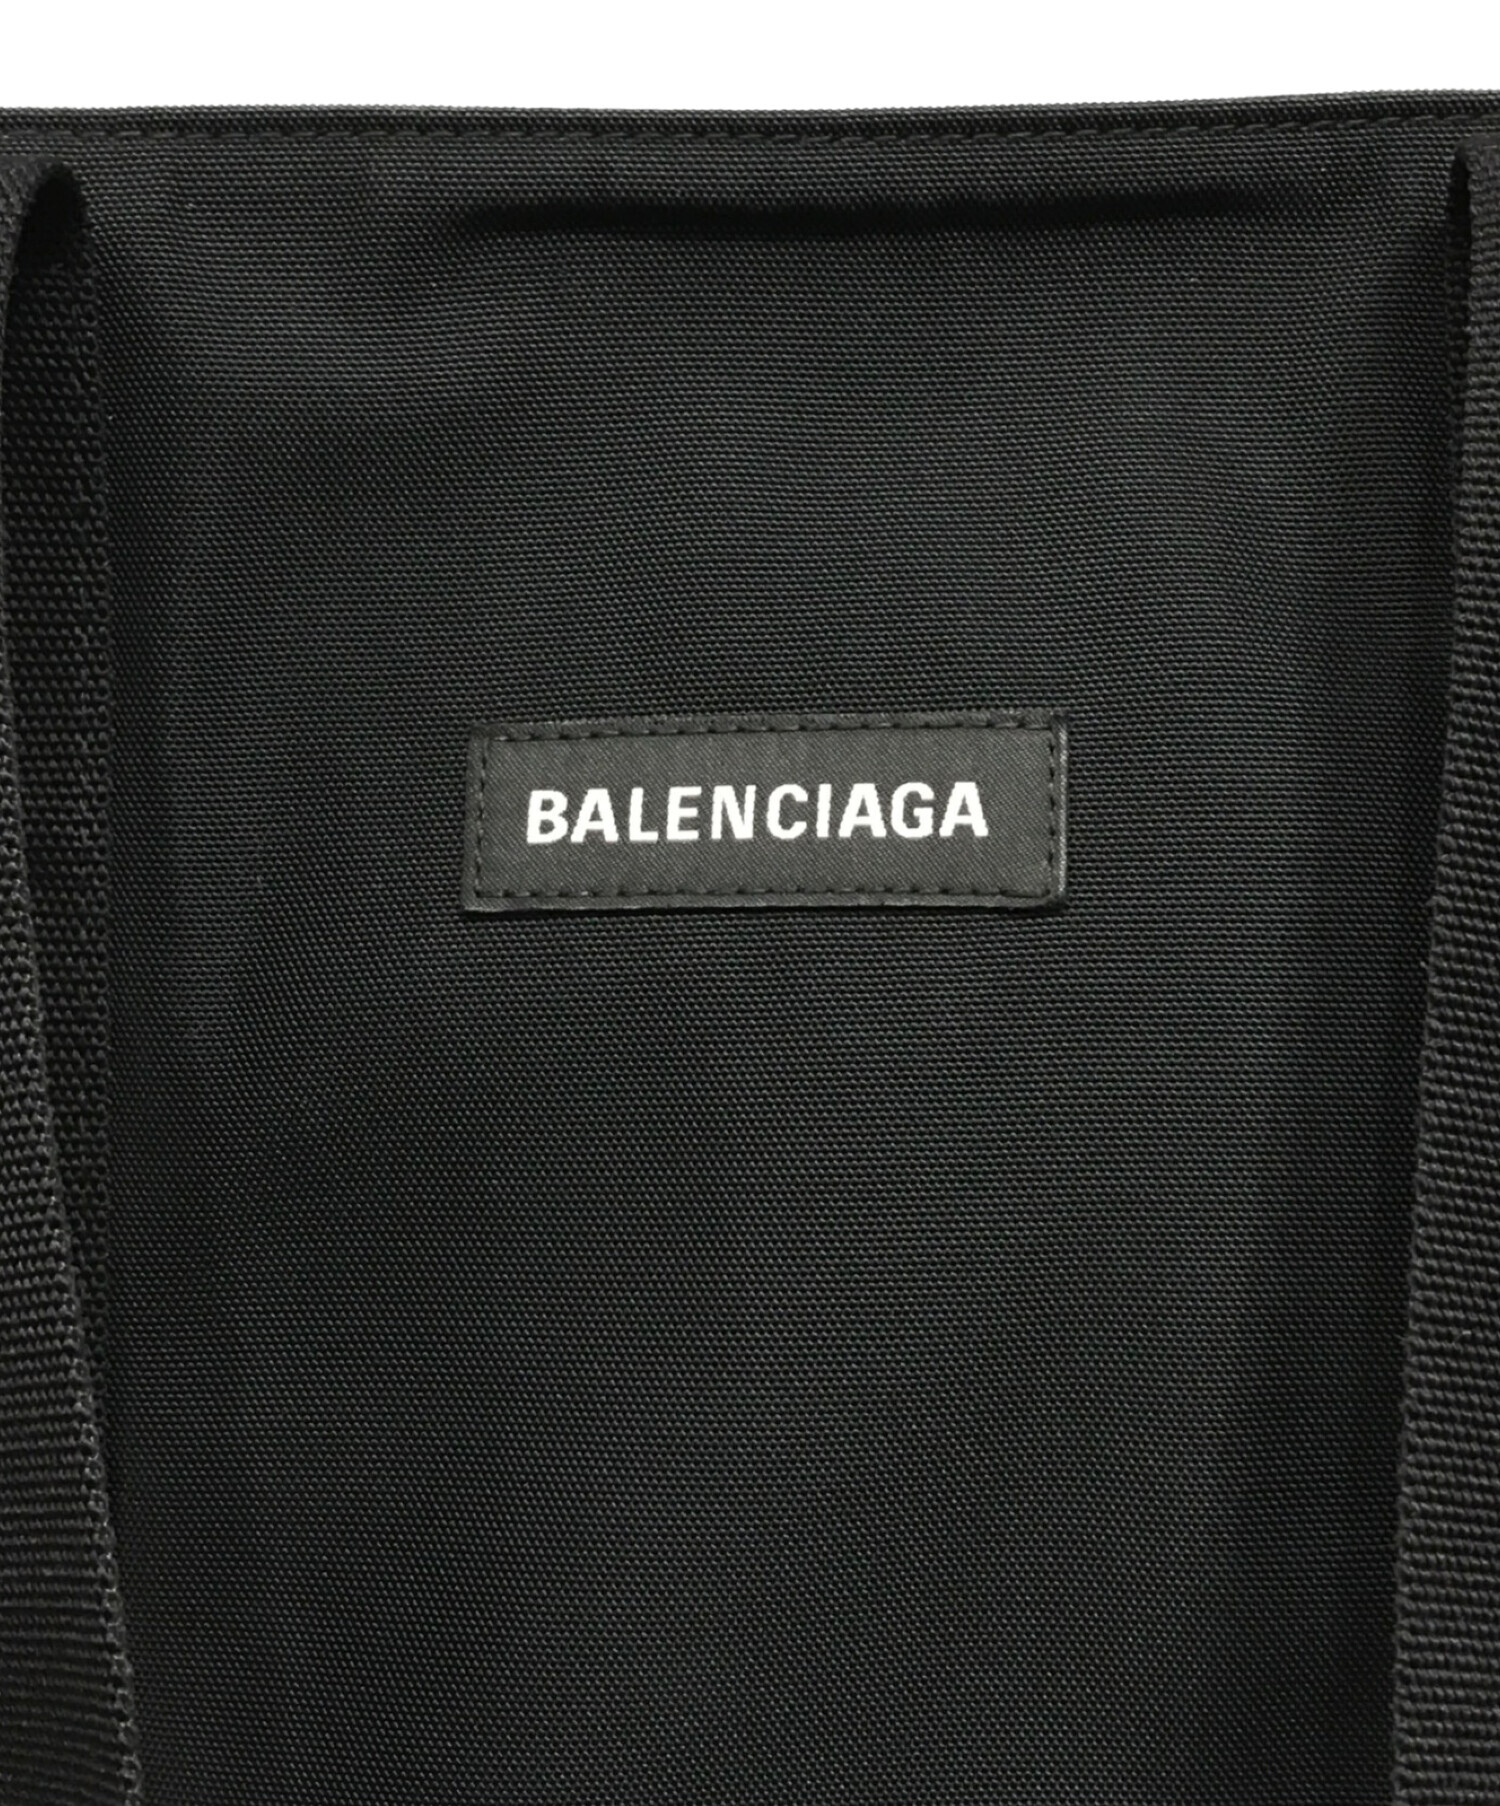 BALENCIAGA (バレンシアガ) エクスプローラー トートバッグ ブラック